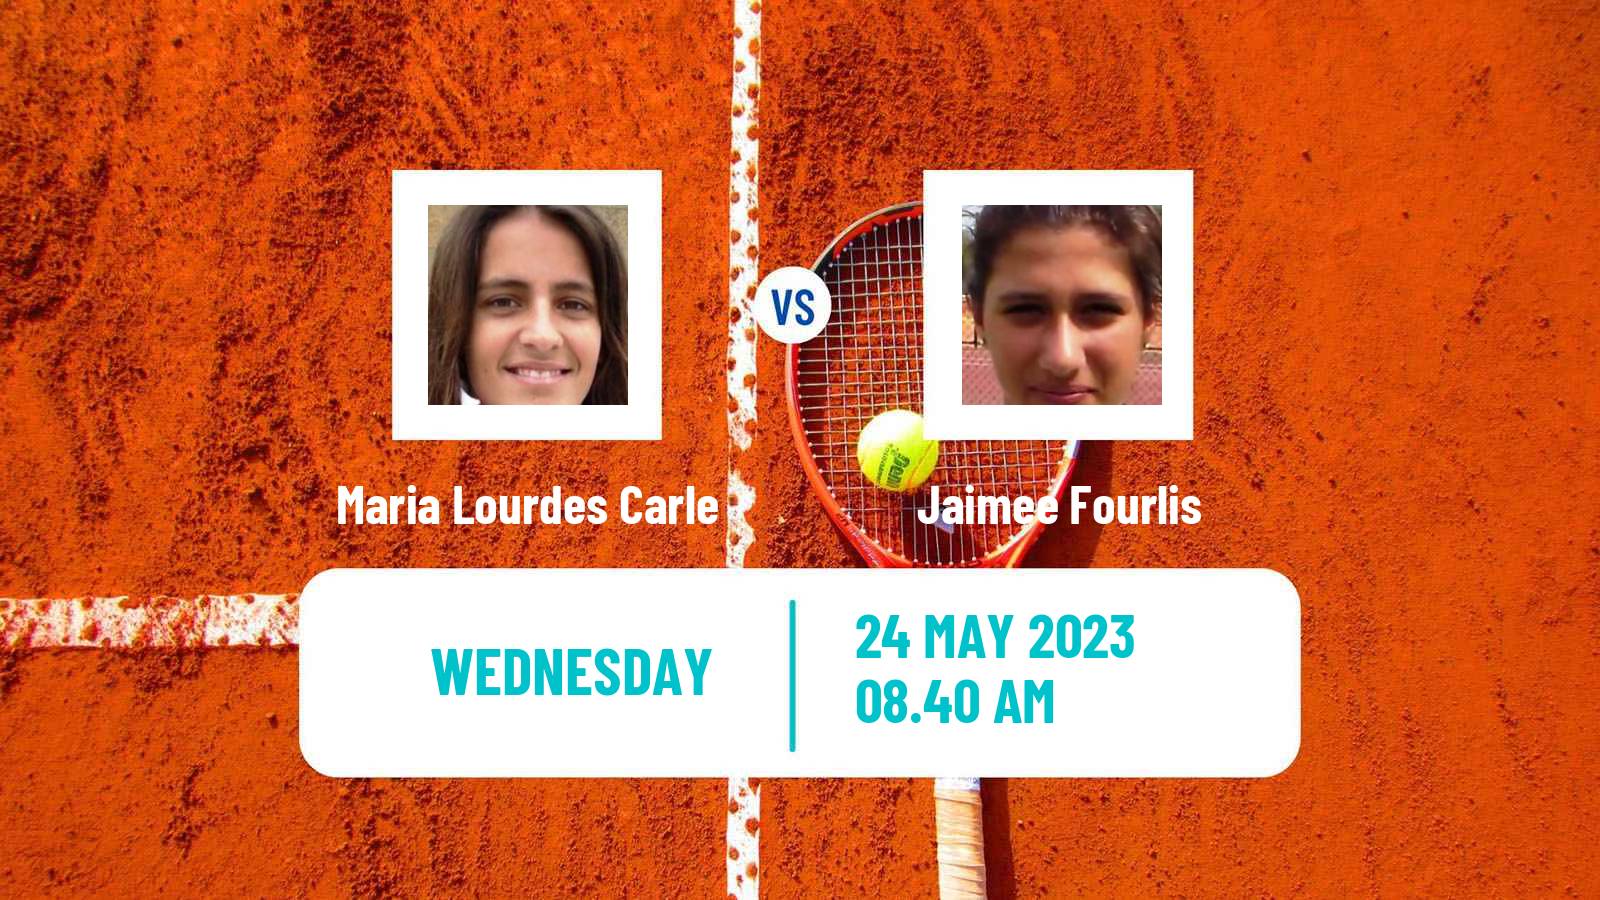 Tennis WTA Roland Garros Maria Lourdes Carle - Jaimee Fourlis